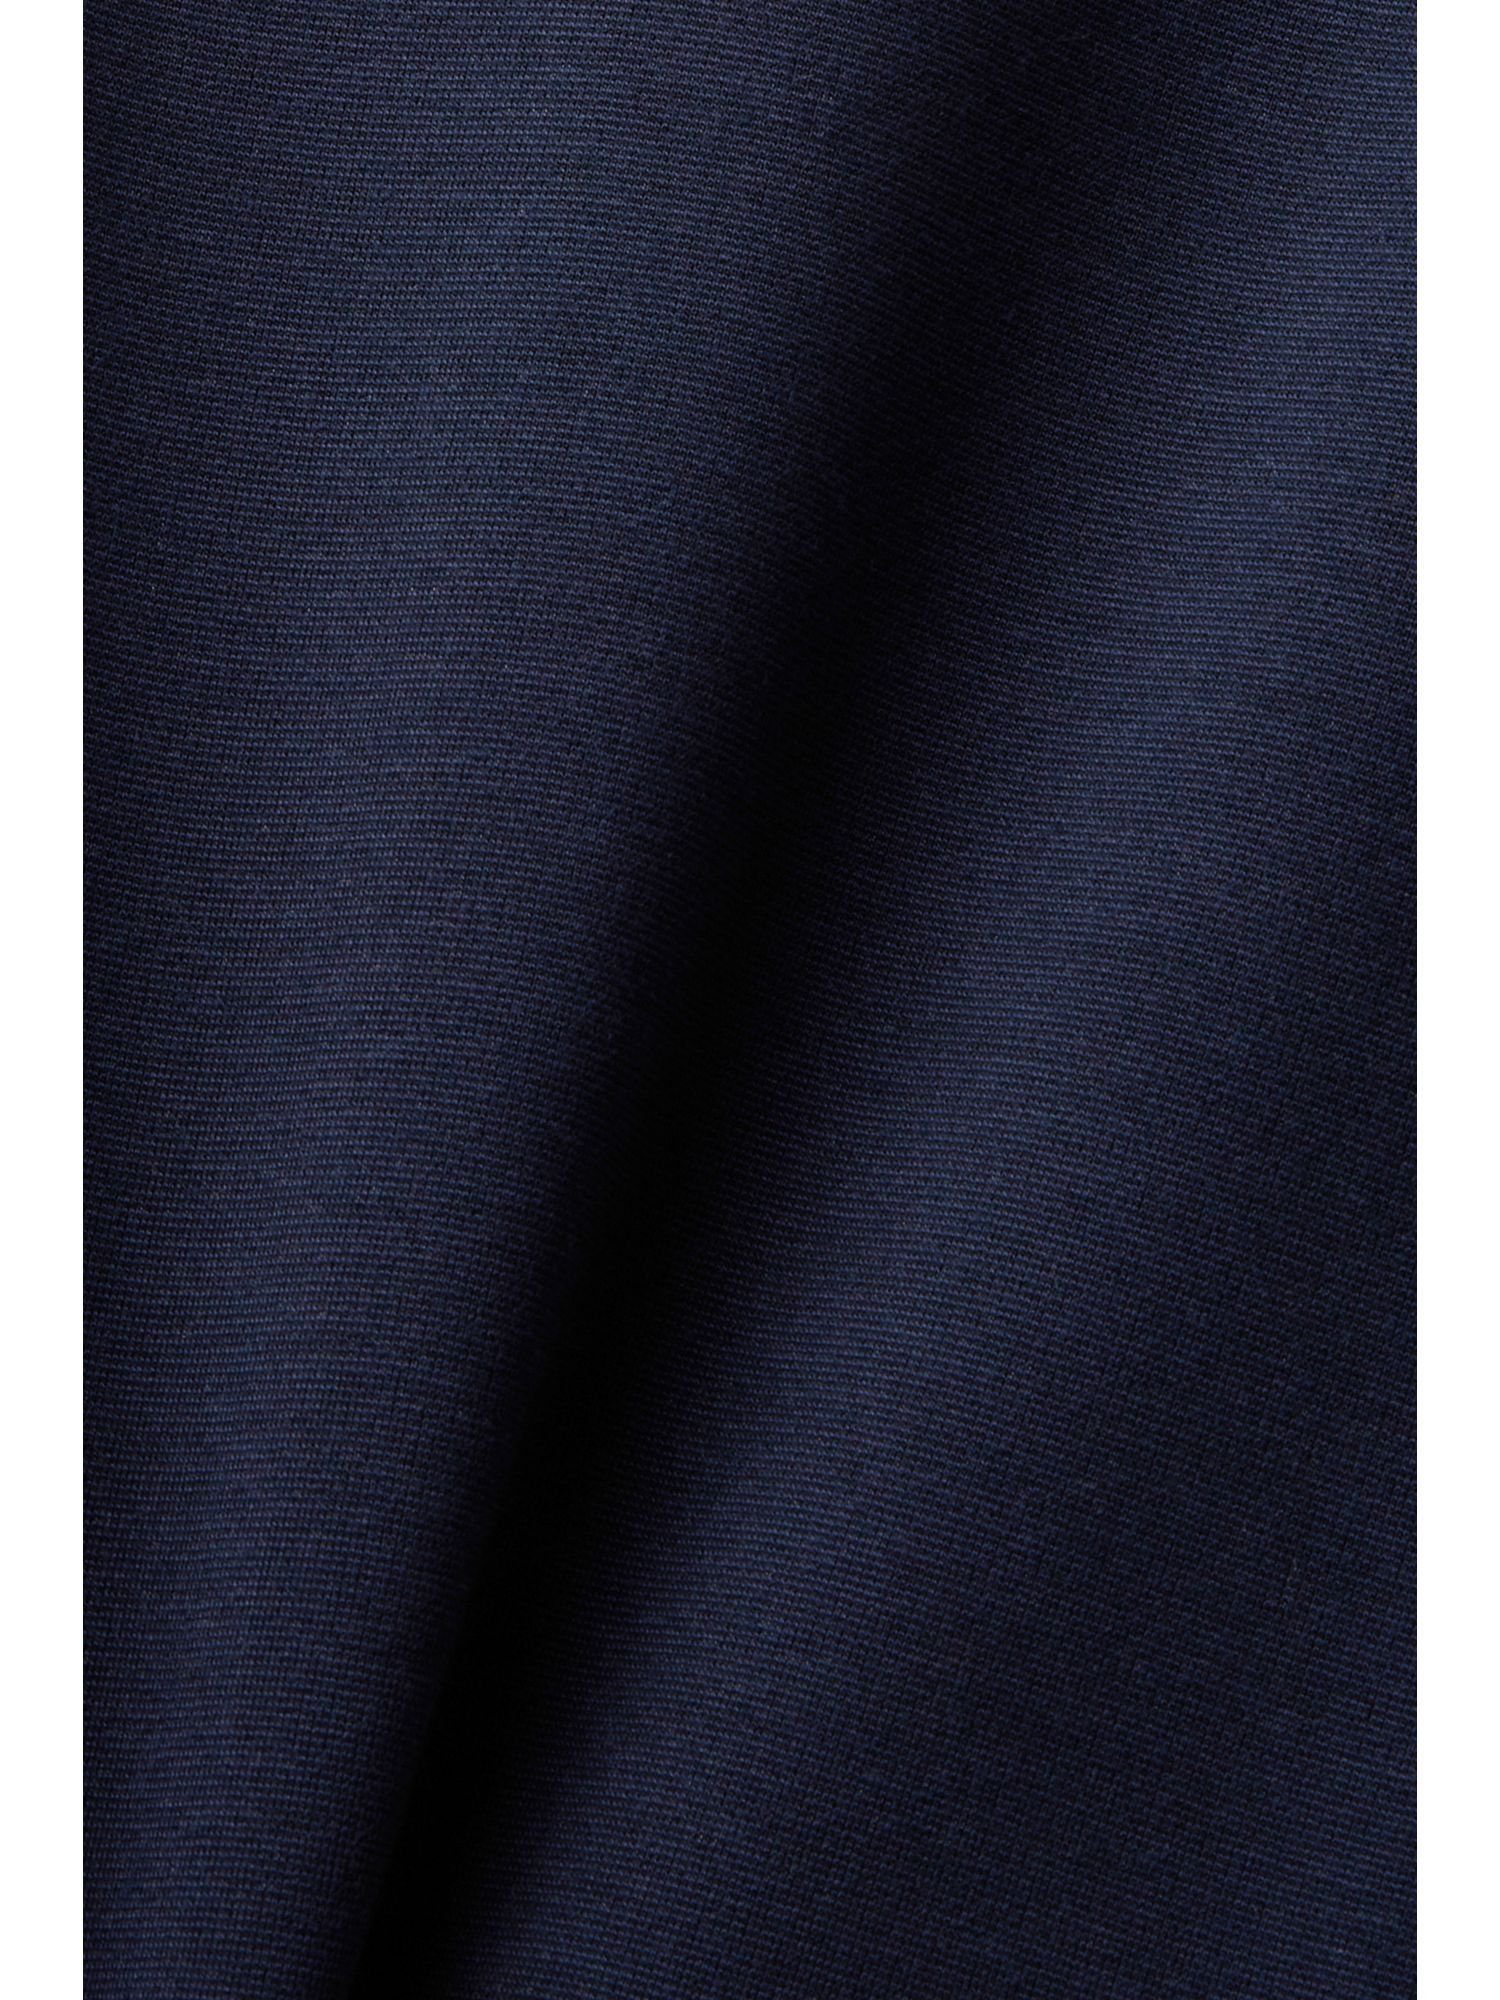 T-Shirt-Kleid Esprit Minikleid Jersey aus NAVY